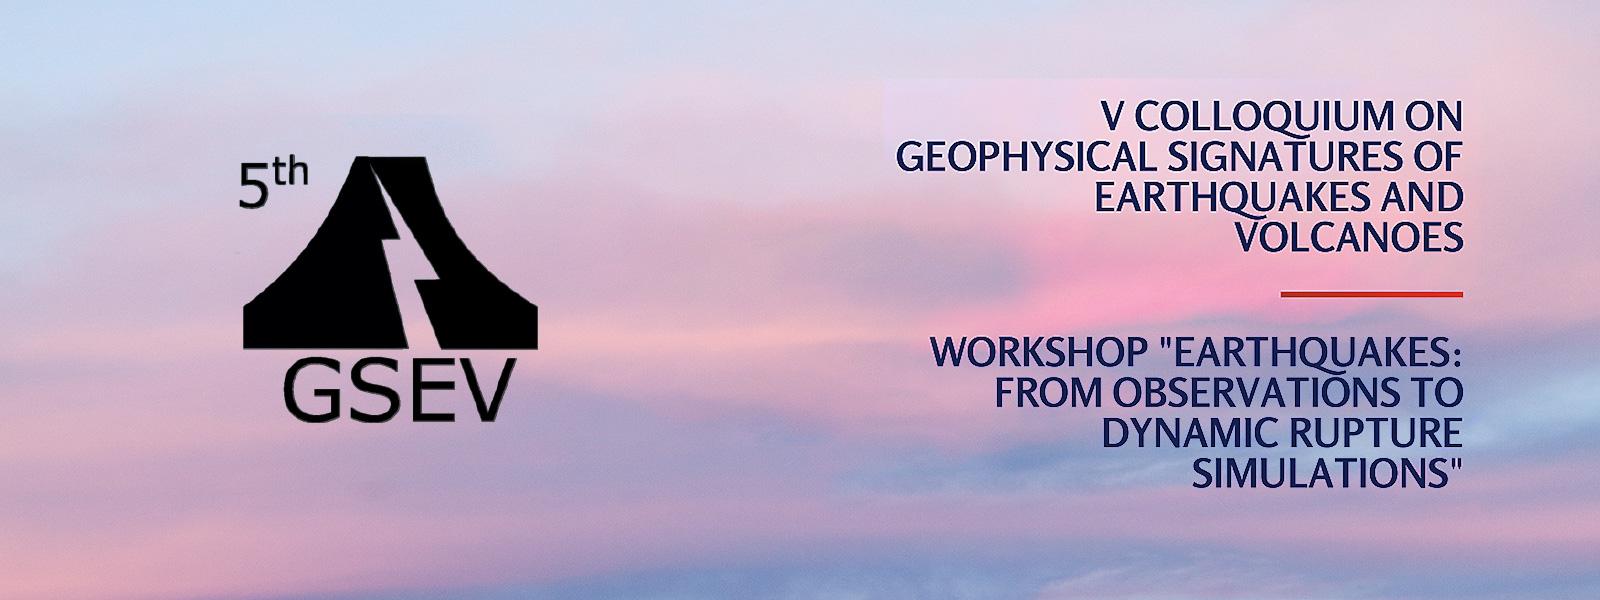 El 5GSEV y el workshop, "Earthquakes: from observations to dynamic ruptura simulations", se realizarán entre el 22 y el 24 de mayo.